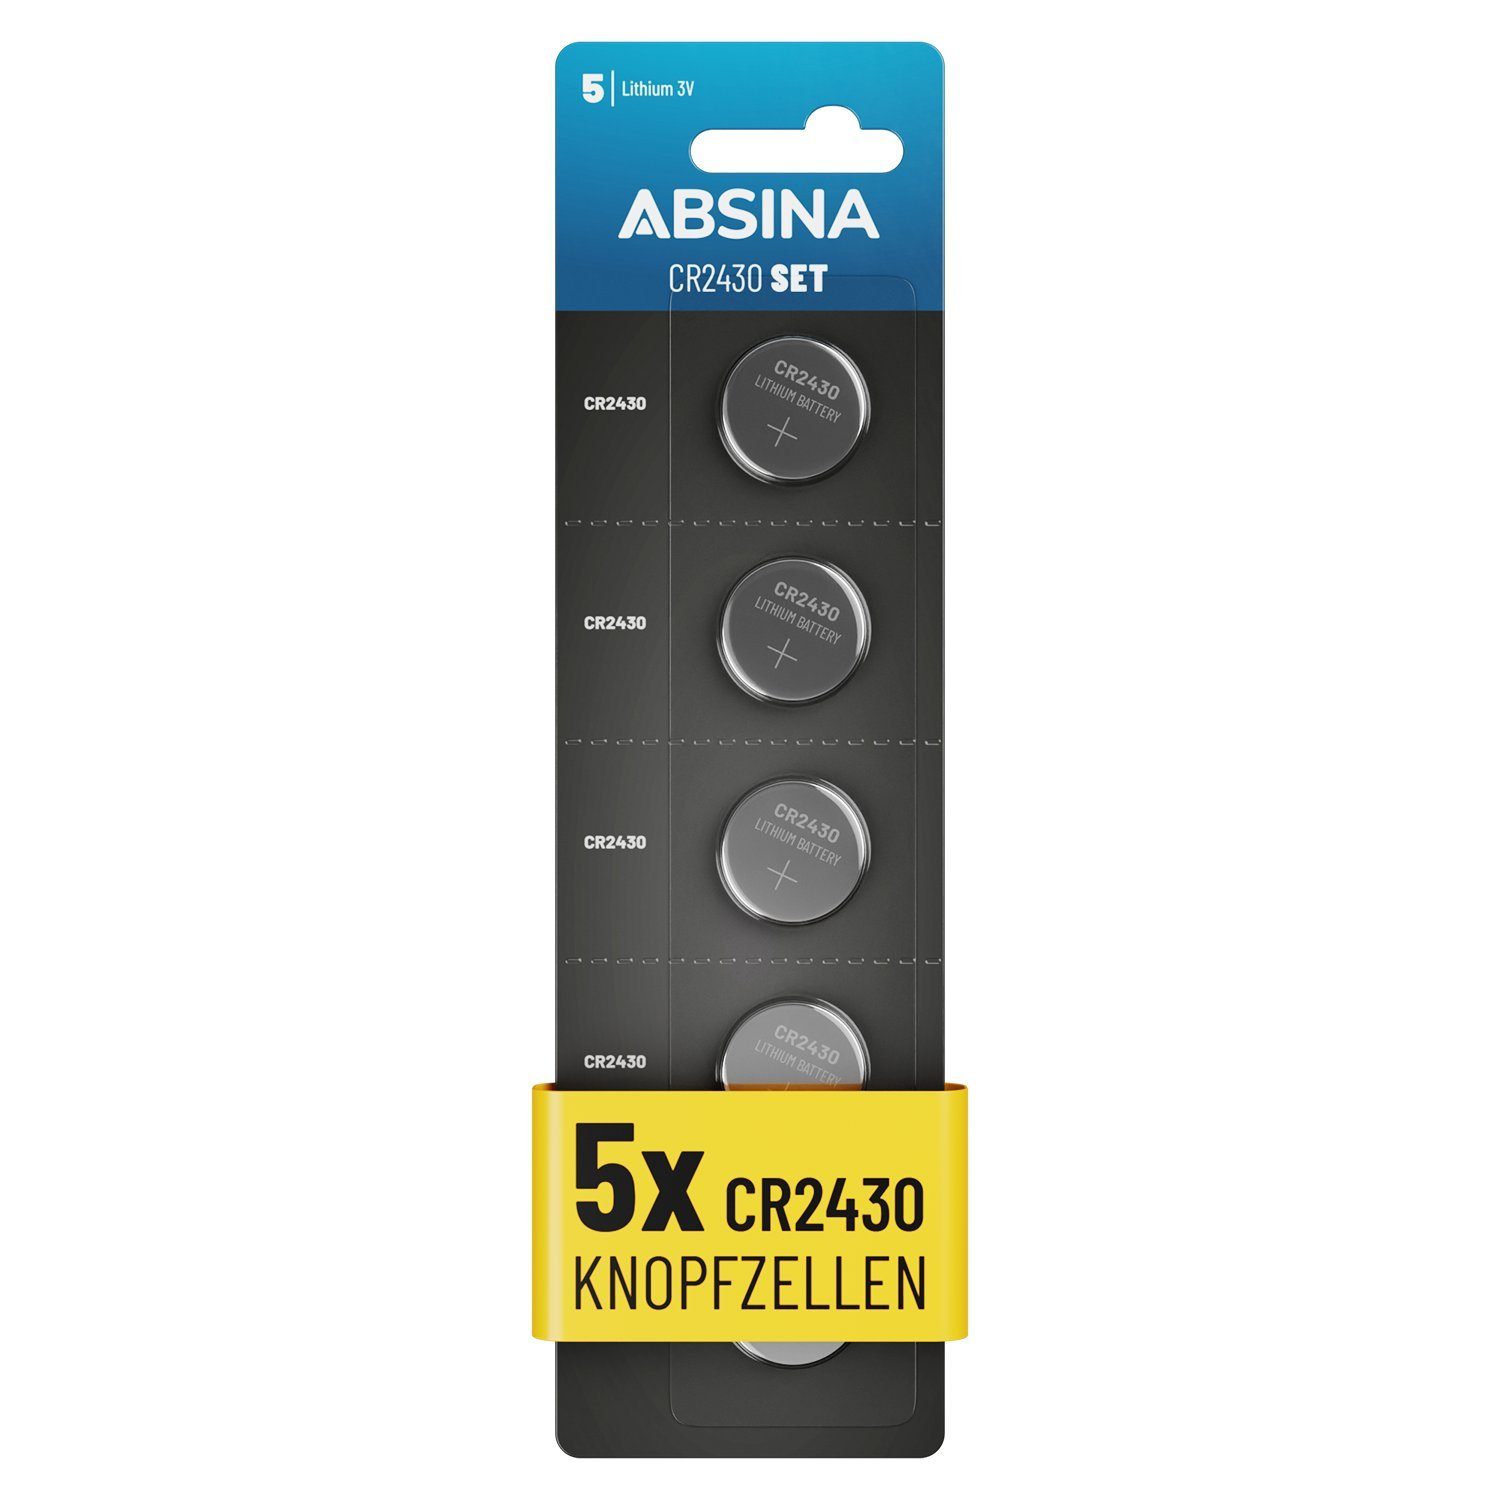 Knopfzellen, 3V ABSINA 2430 Knopfbatterie Knopfzelle CR CR2430 5er St) - Pack (1 Knopfzelle,